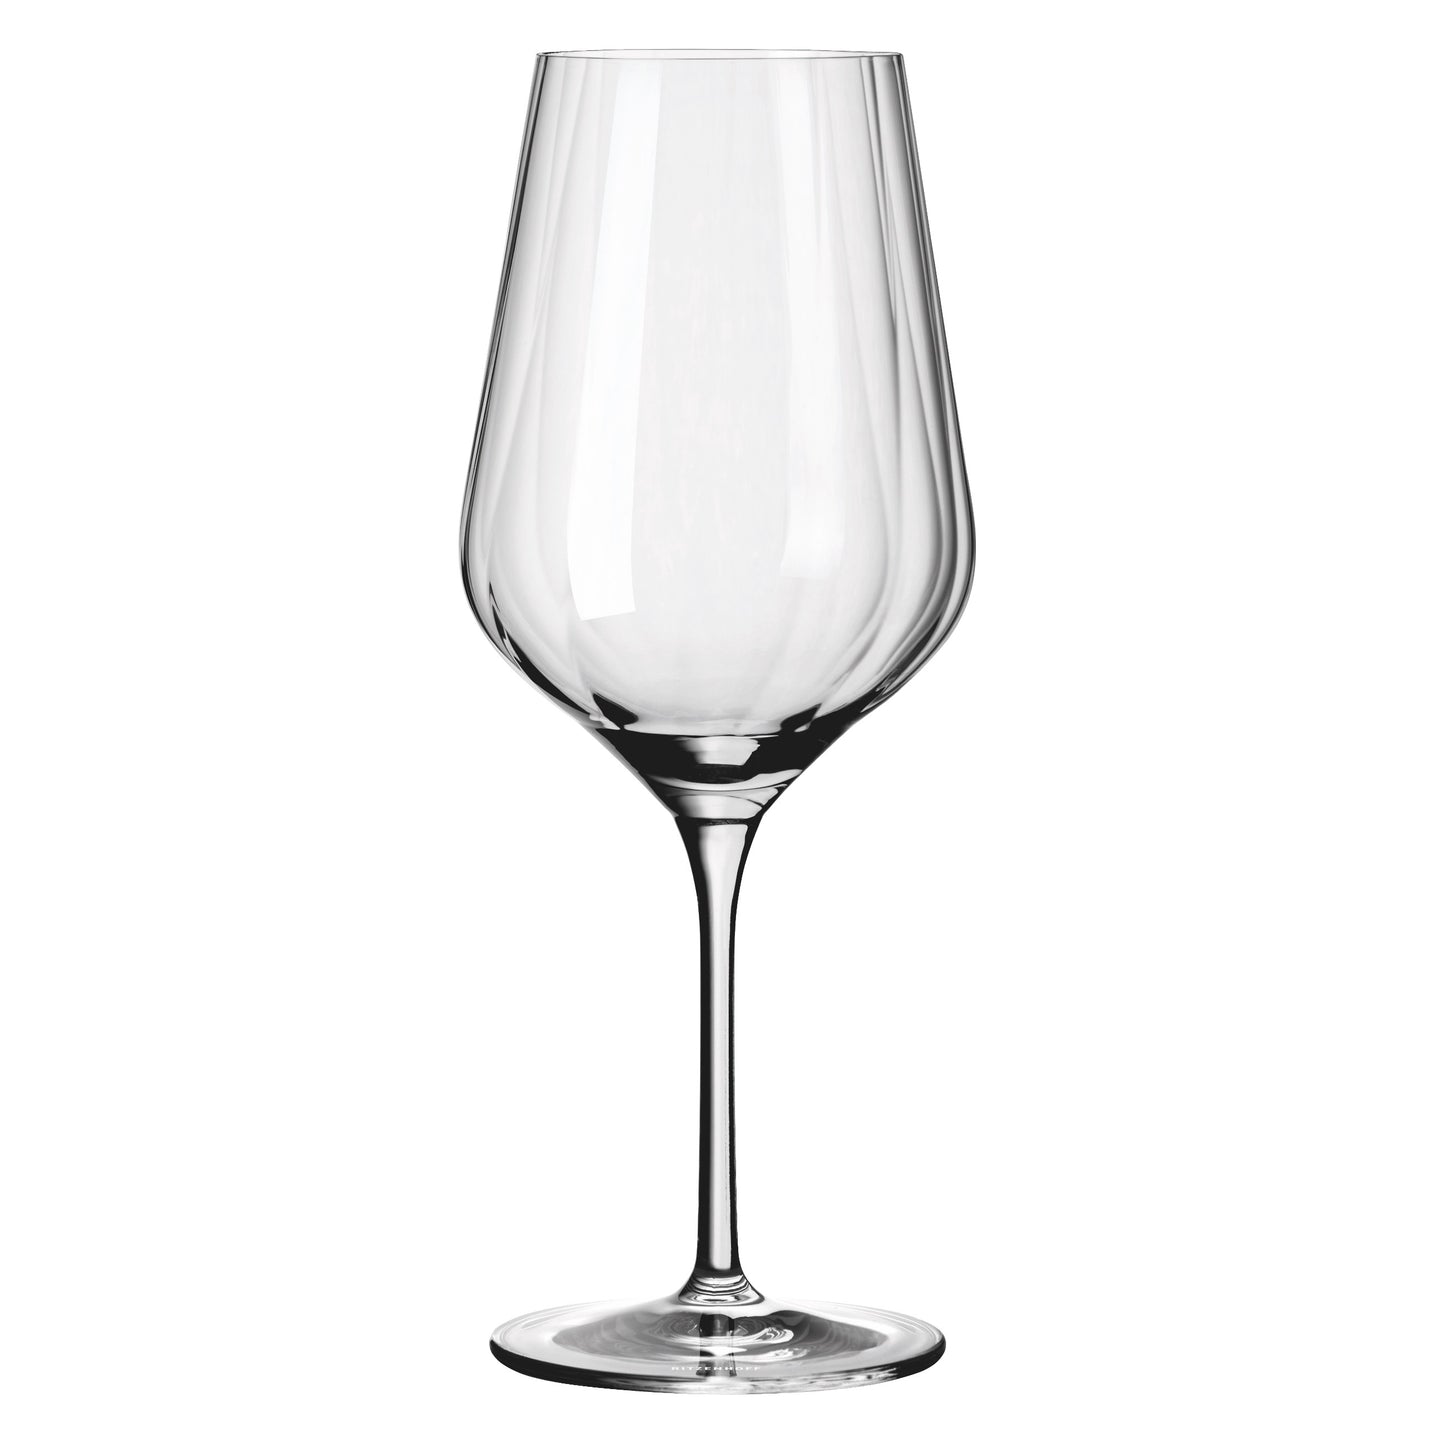 Sternschliff Red Wine Glass, Set of 2